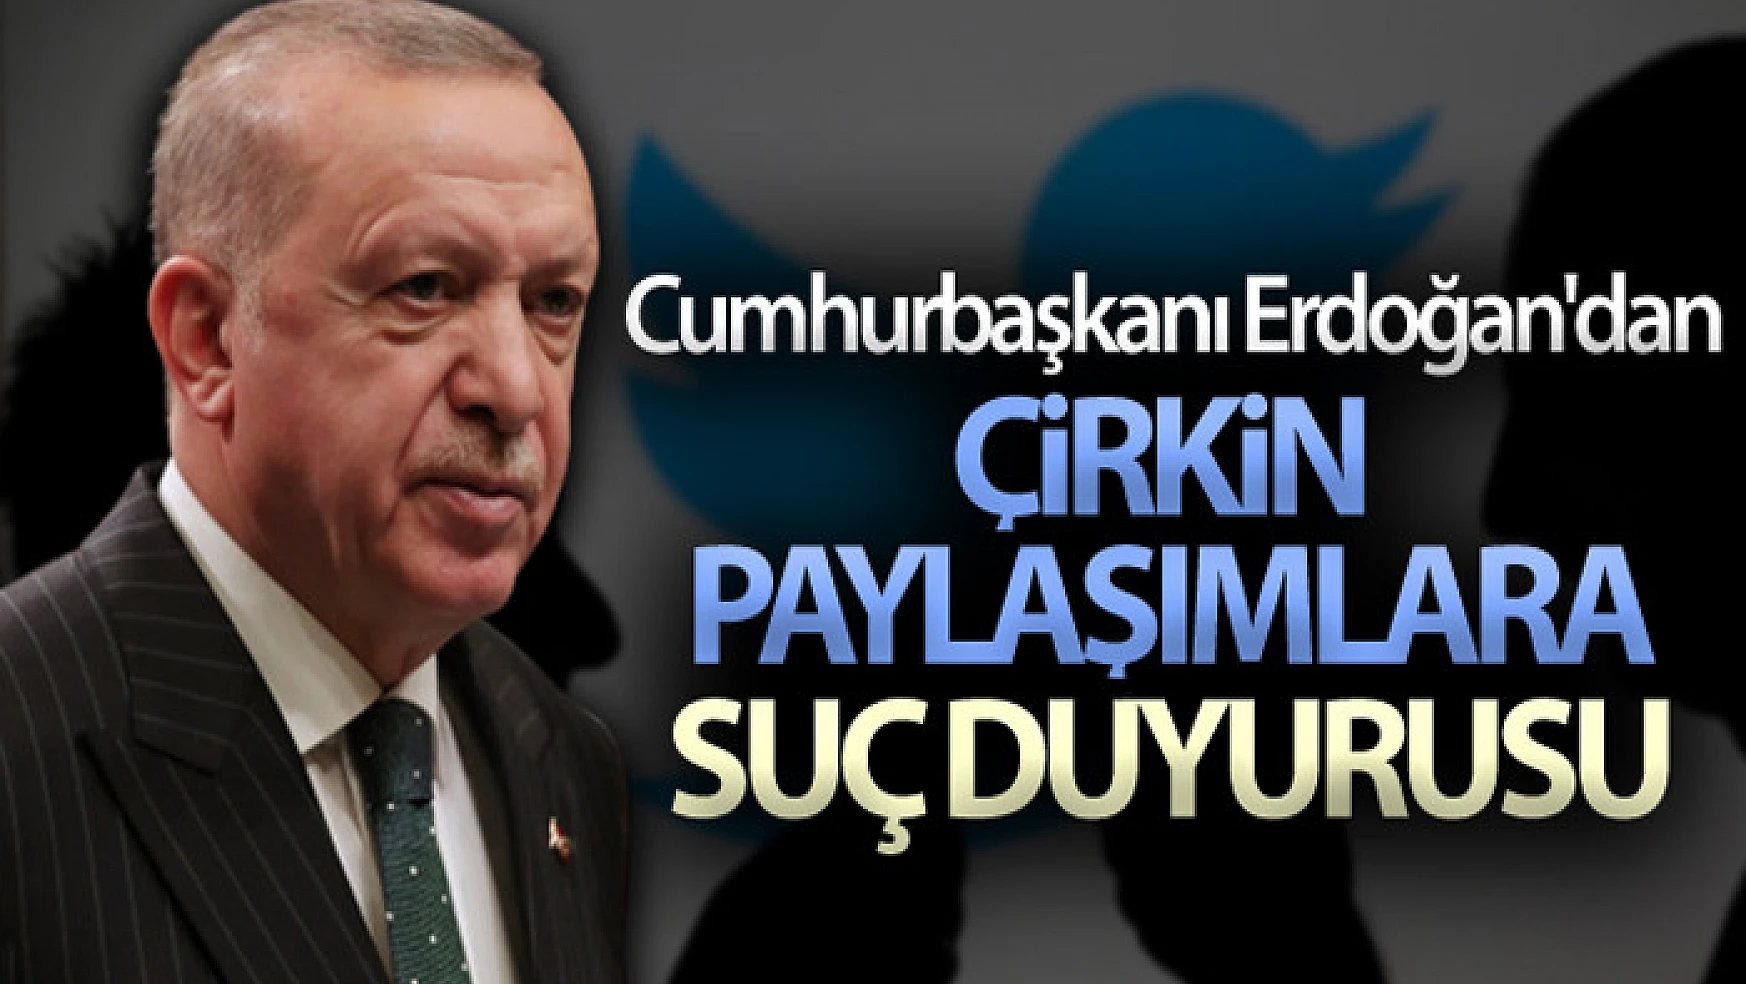 Cumhurbaşkanı Erdoğan'dan çirkin paylaşımlara suç duyurusu